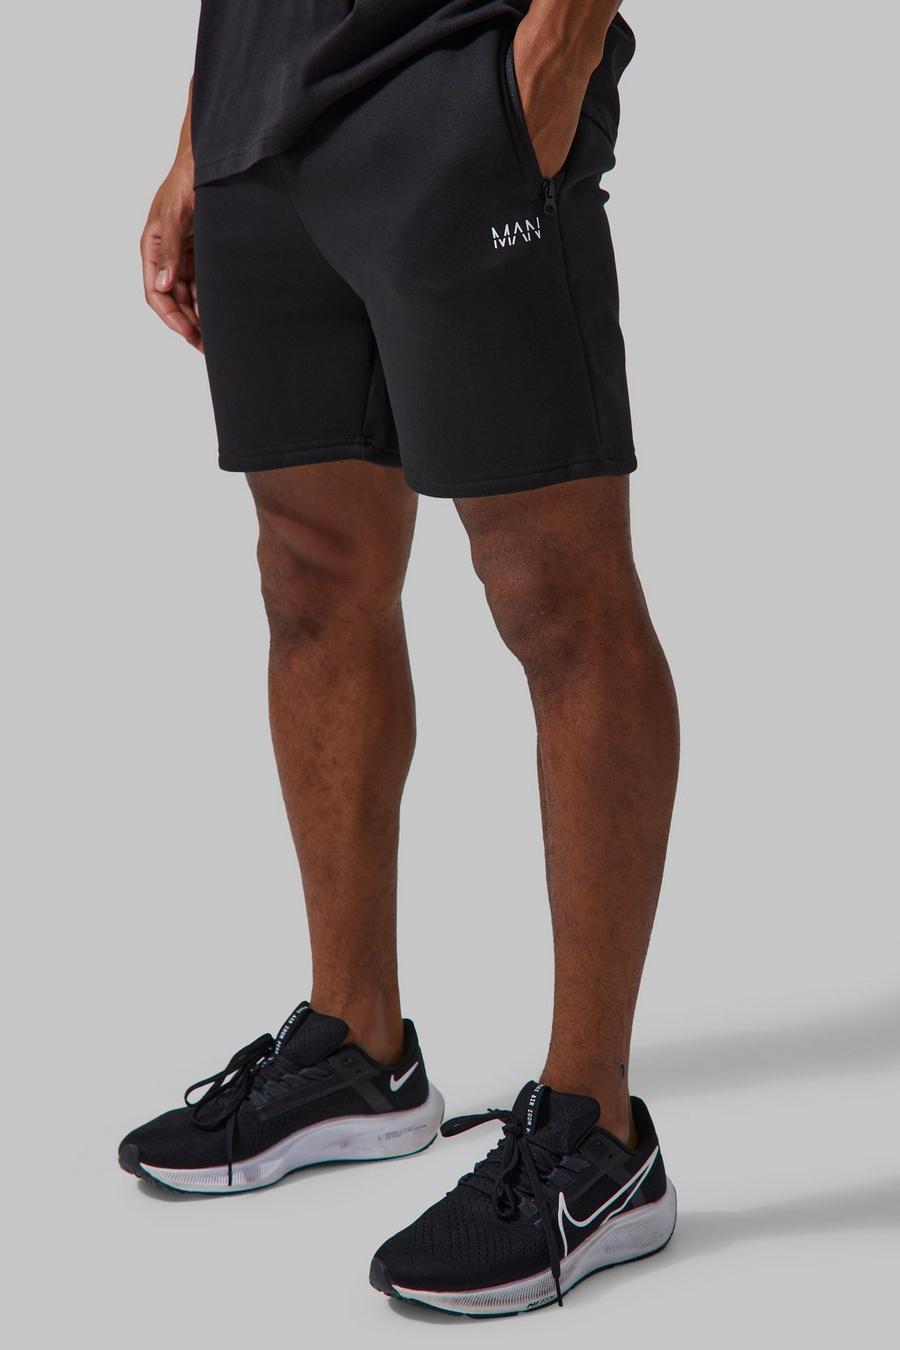 Pantalón corto MAN Active deportivo ajustado al músculo, Black negro